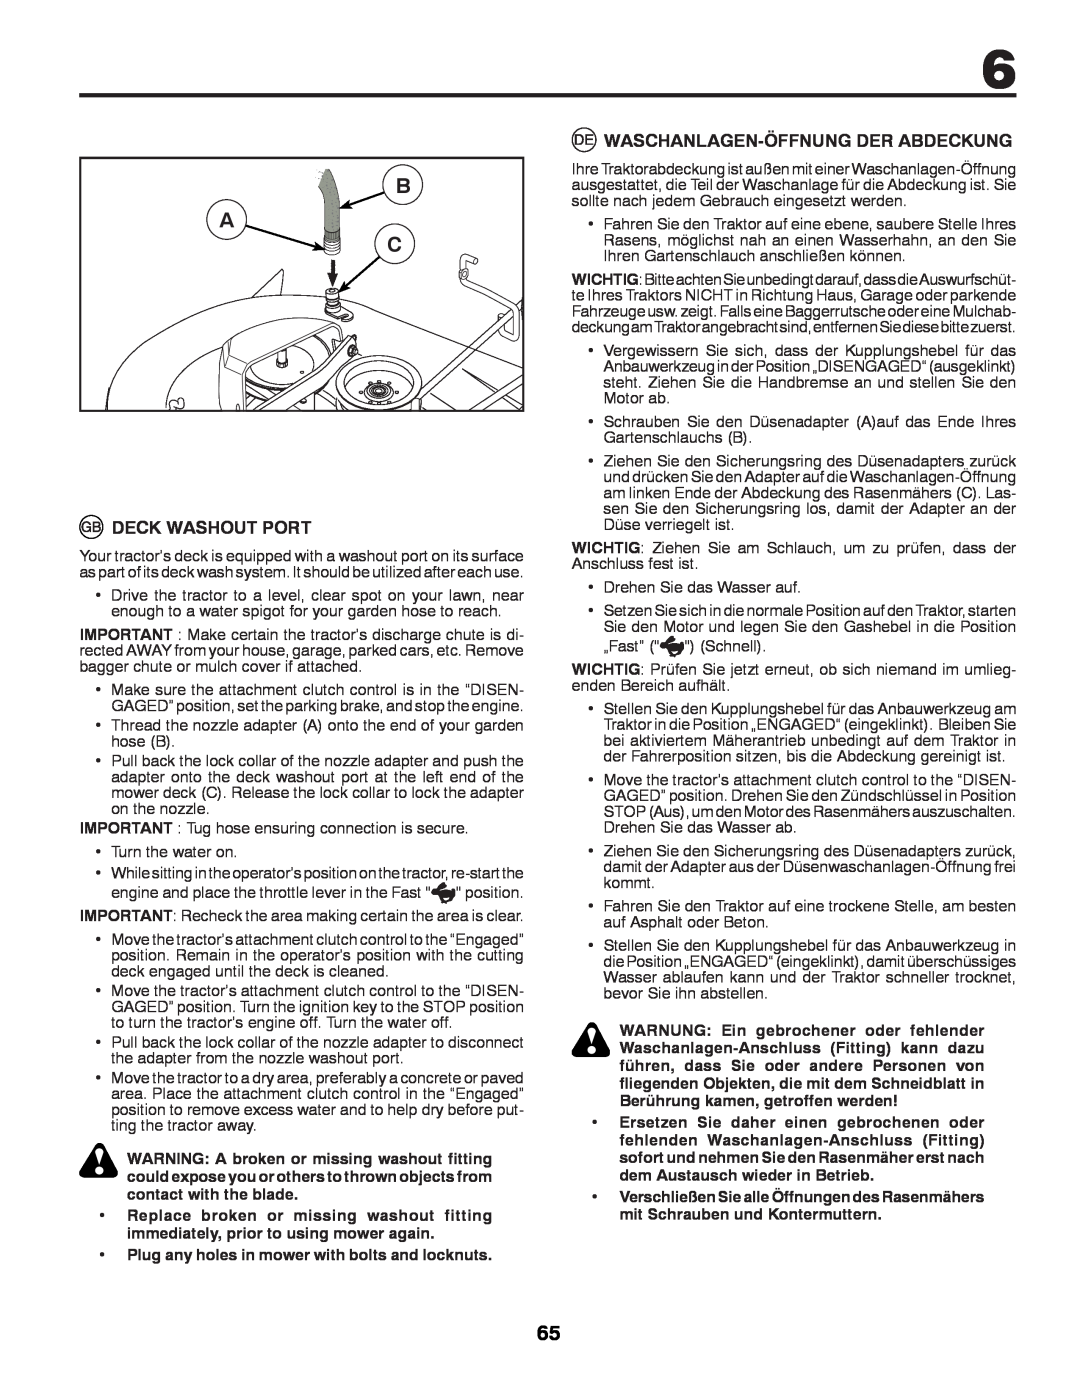 McCulloch 532 43 42-91 Rev. 1 instruction manual B A C, Deck Washout Port, Waschanlagen-Öffnungder Abdeckung 